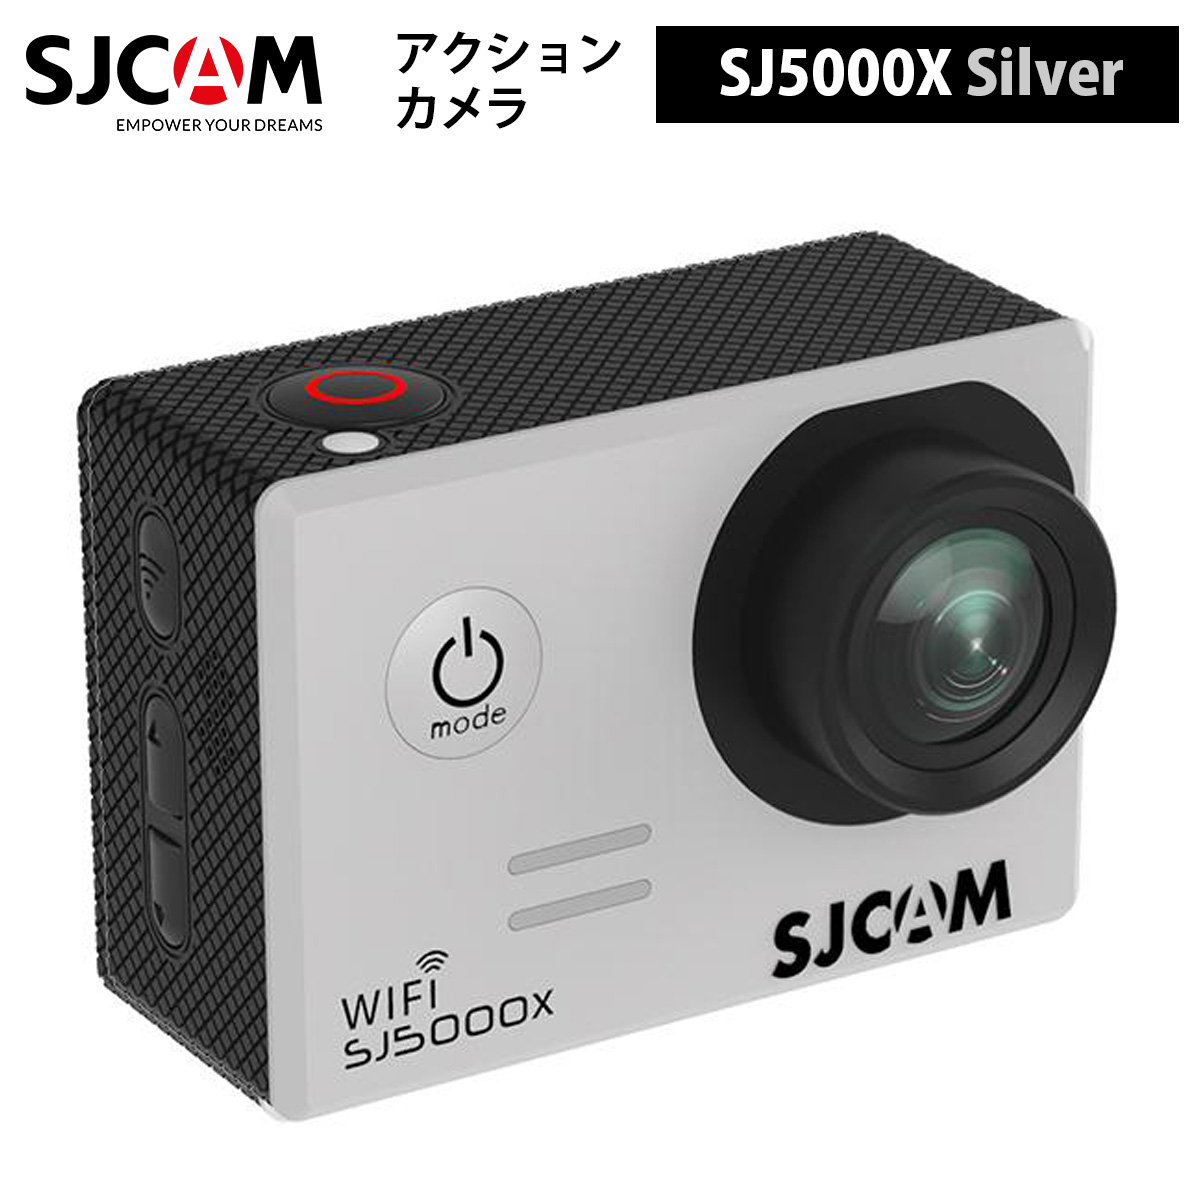 激安格安割引情報満載 日本語サポート対応 正規輸入代理店商品 1年保証 ポイント3倍実施中 SJCAM アクションカメラ SJ5000X 色：シルバー 超歓迎された